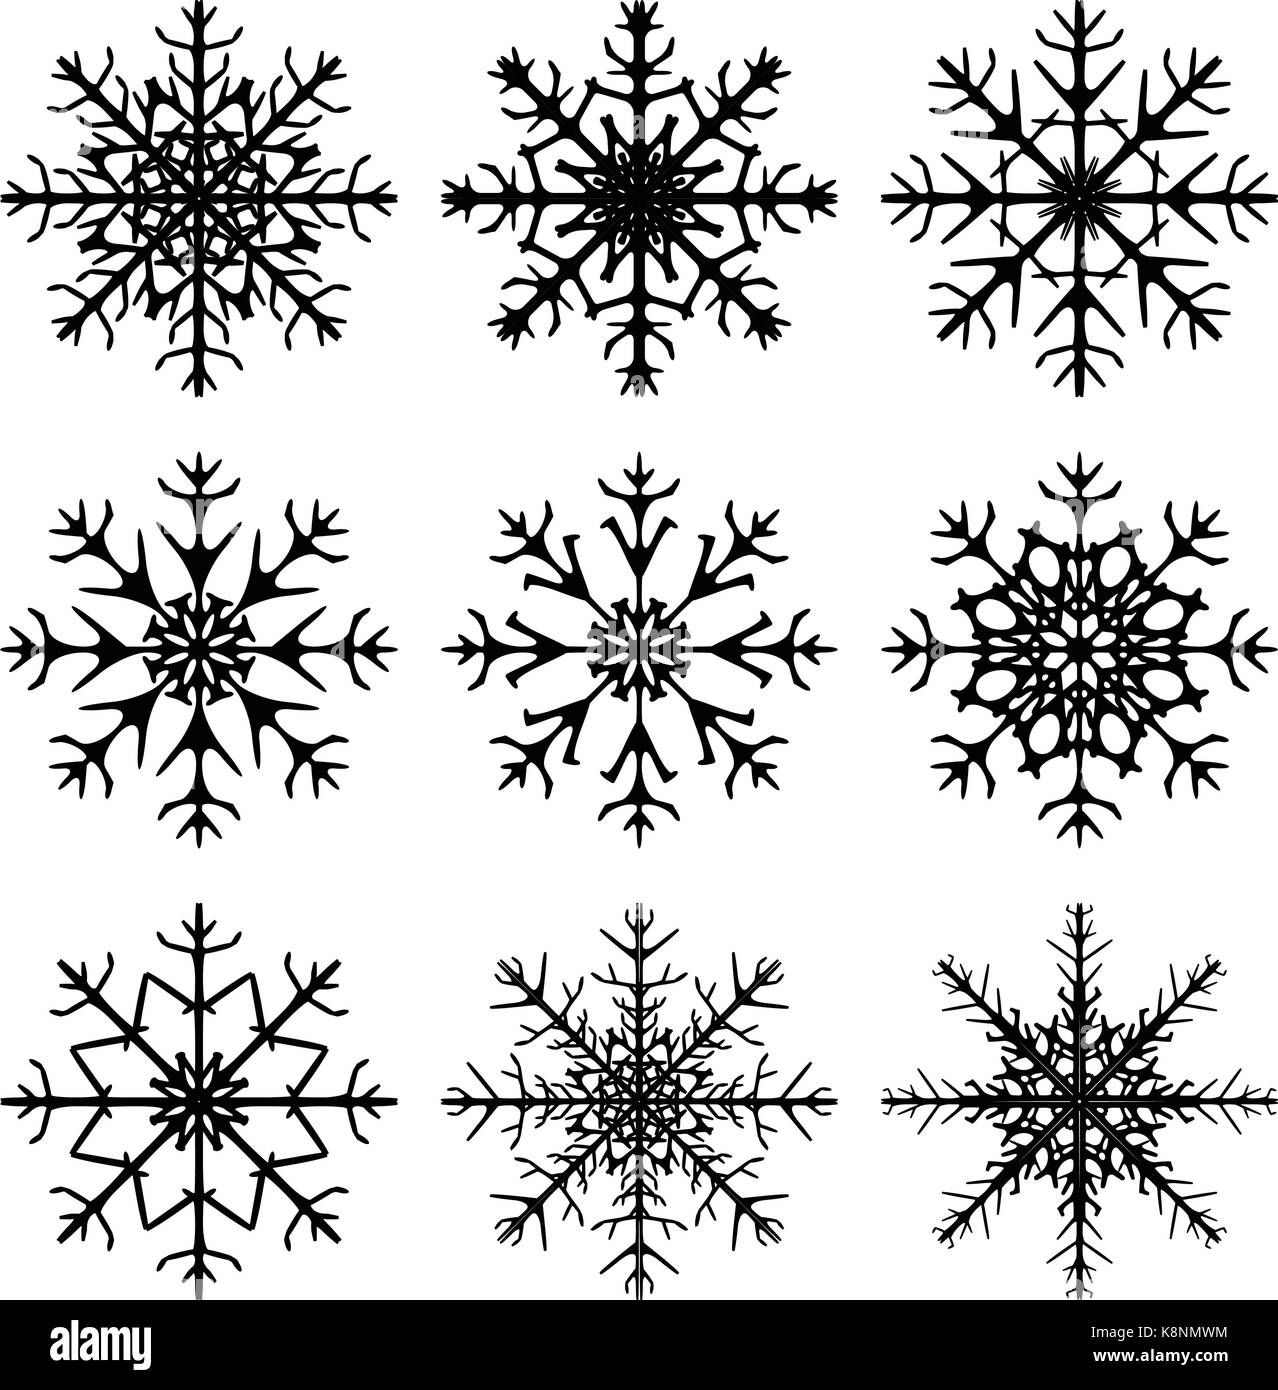 Establecer los copos de nieve en el estilo de dibujo para el diseño de  invierno navidad y tema de invierno icono de copo de nieve pintado